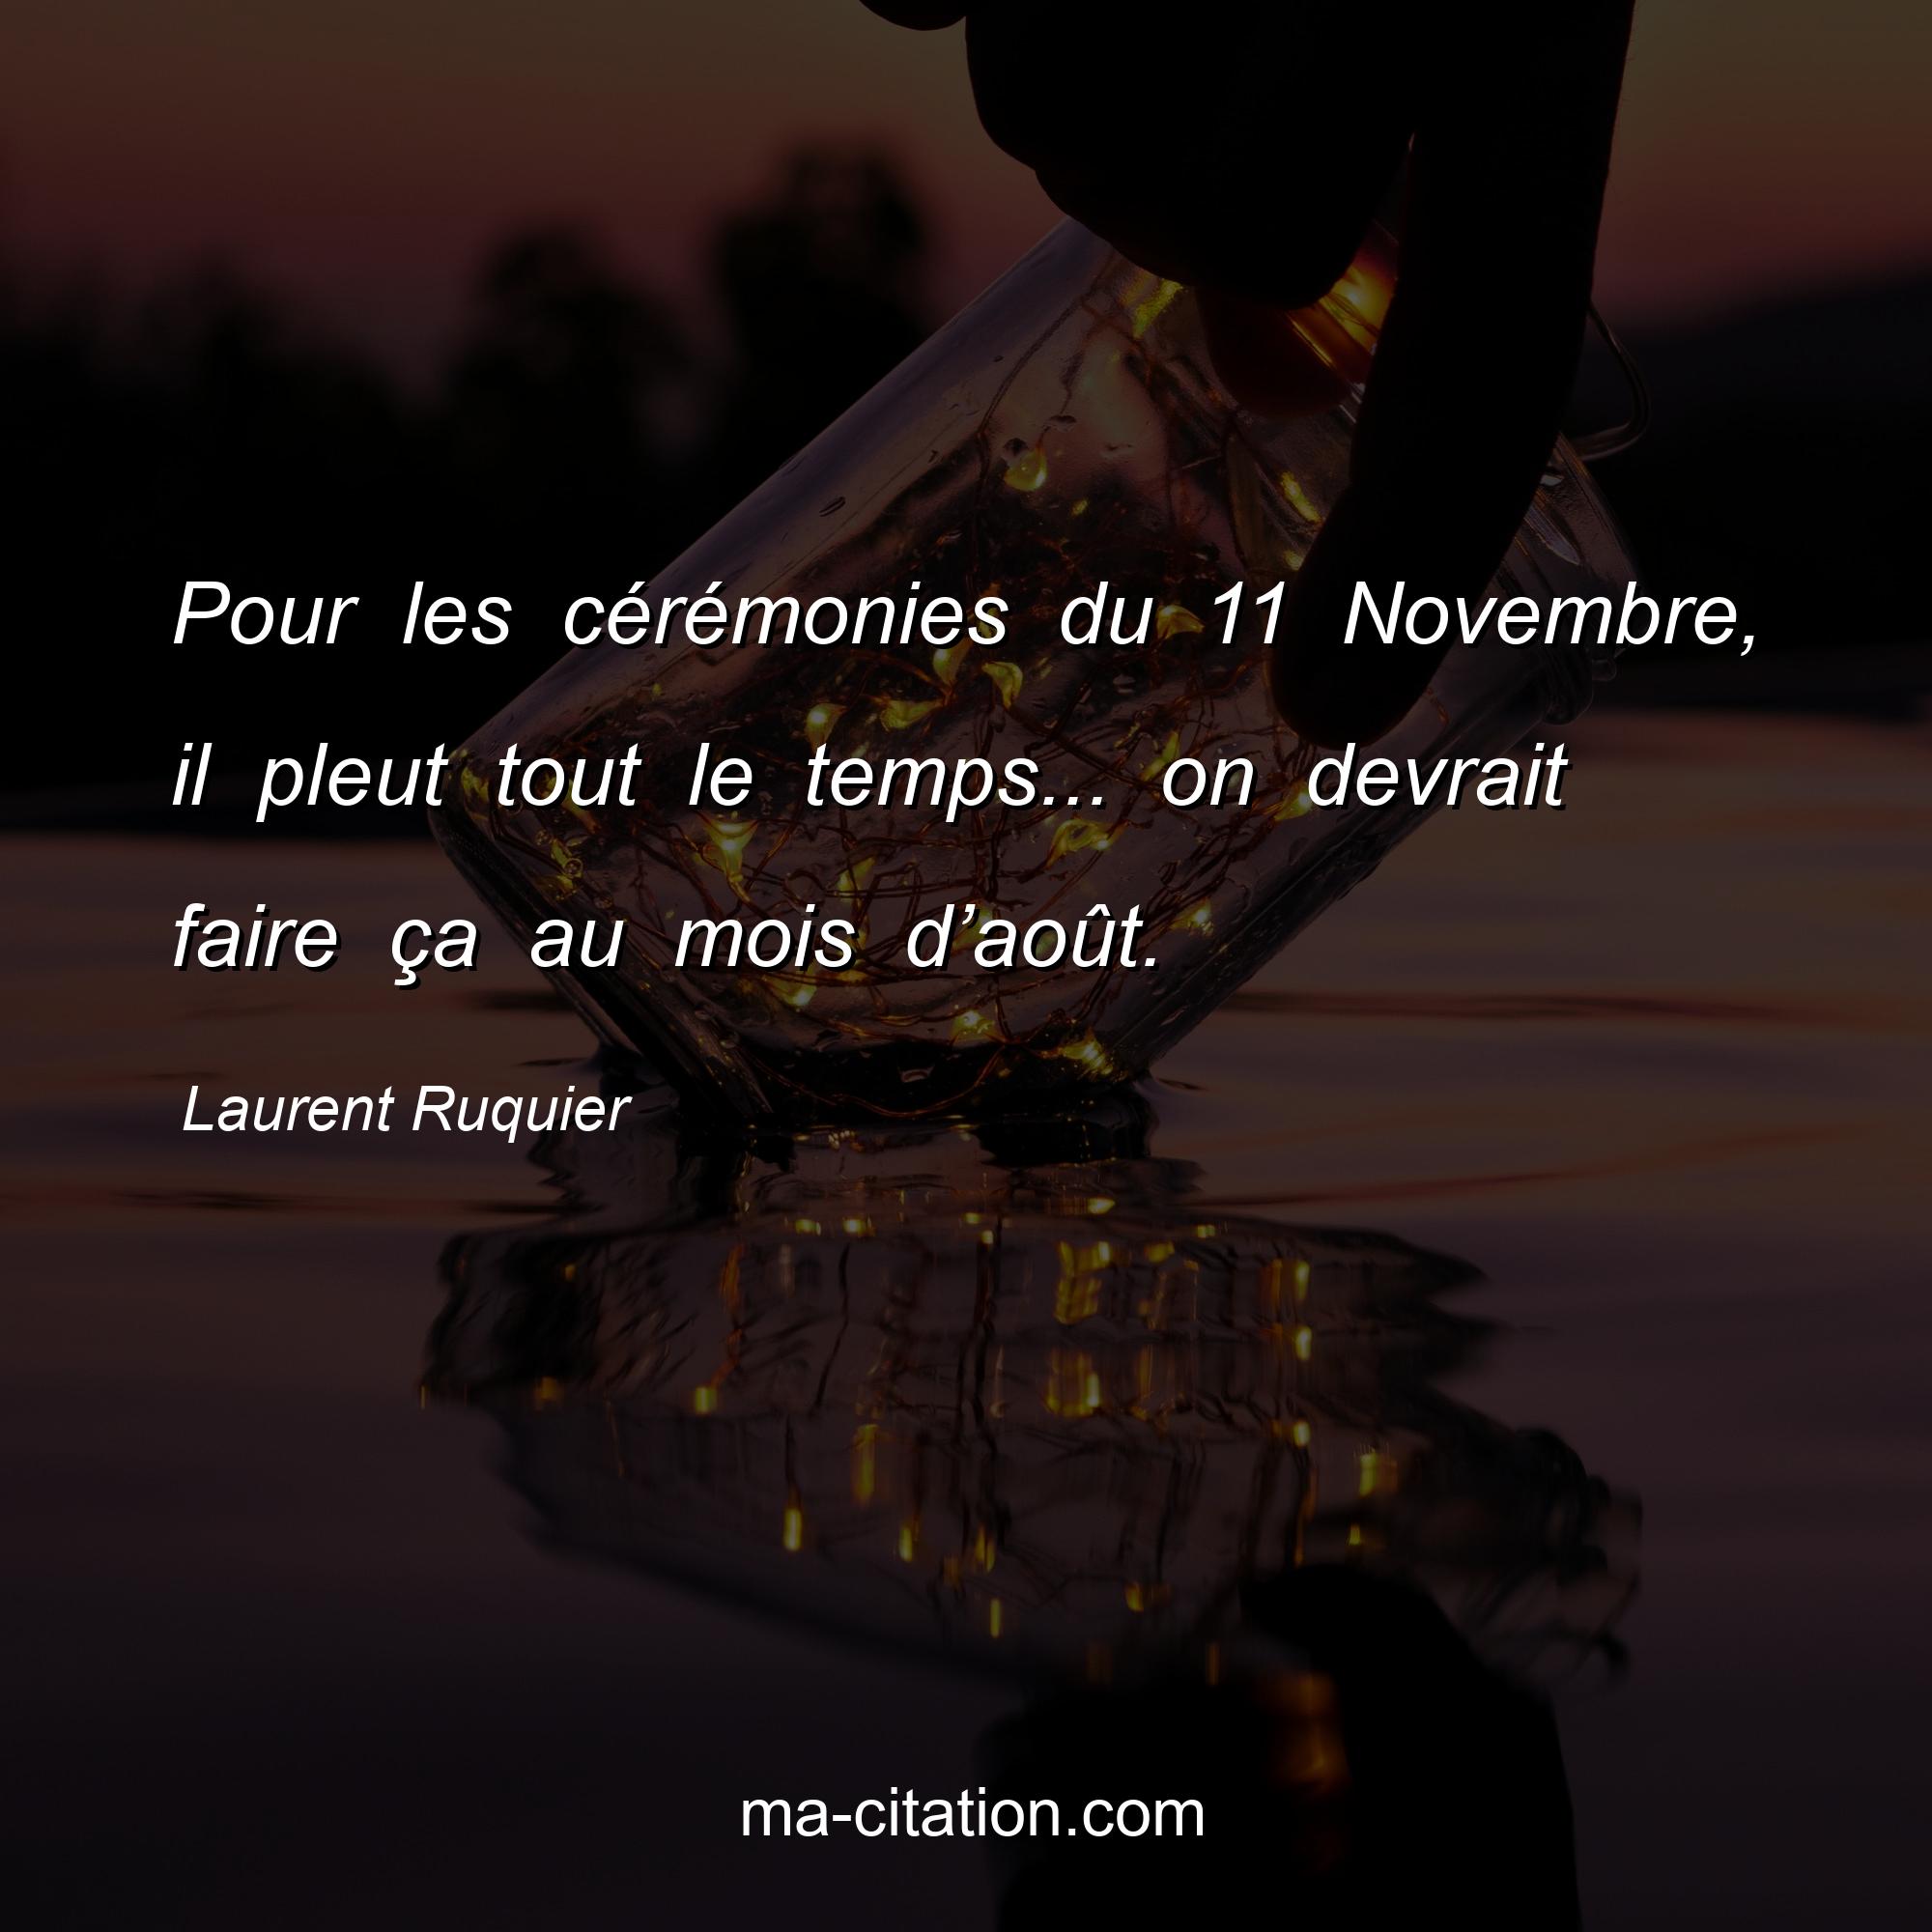 Laurent Ruquier : Pour les cérémonies du 11 Novembre, il pleut tout le temps... on devrait faire ça au mois d’août.